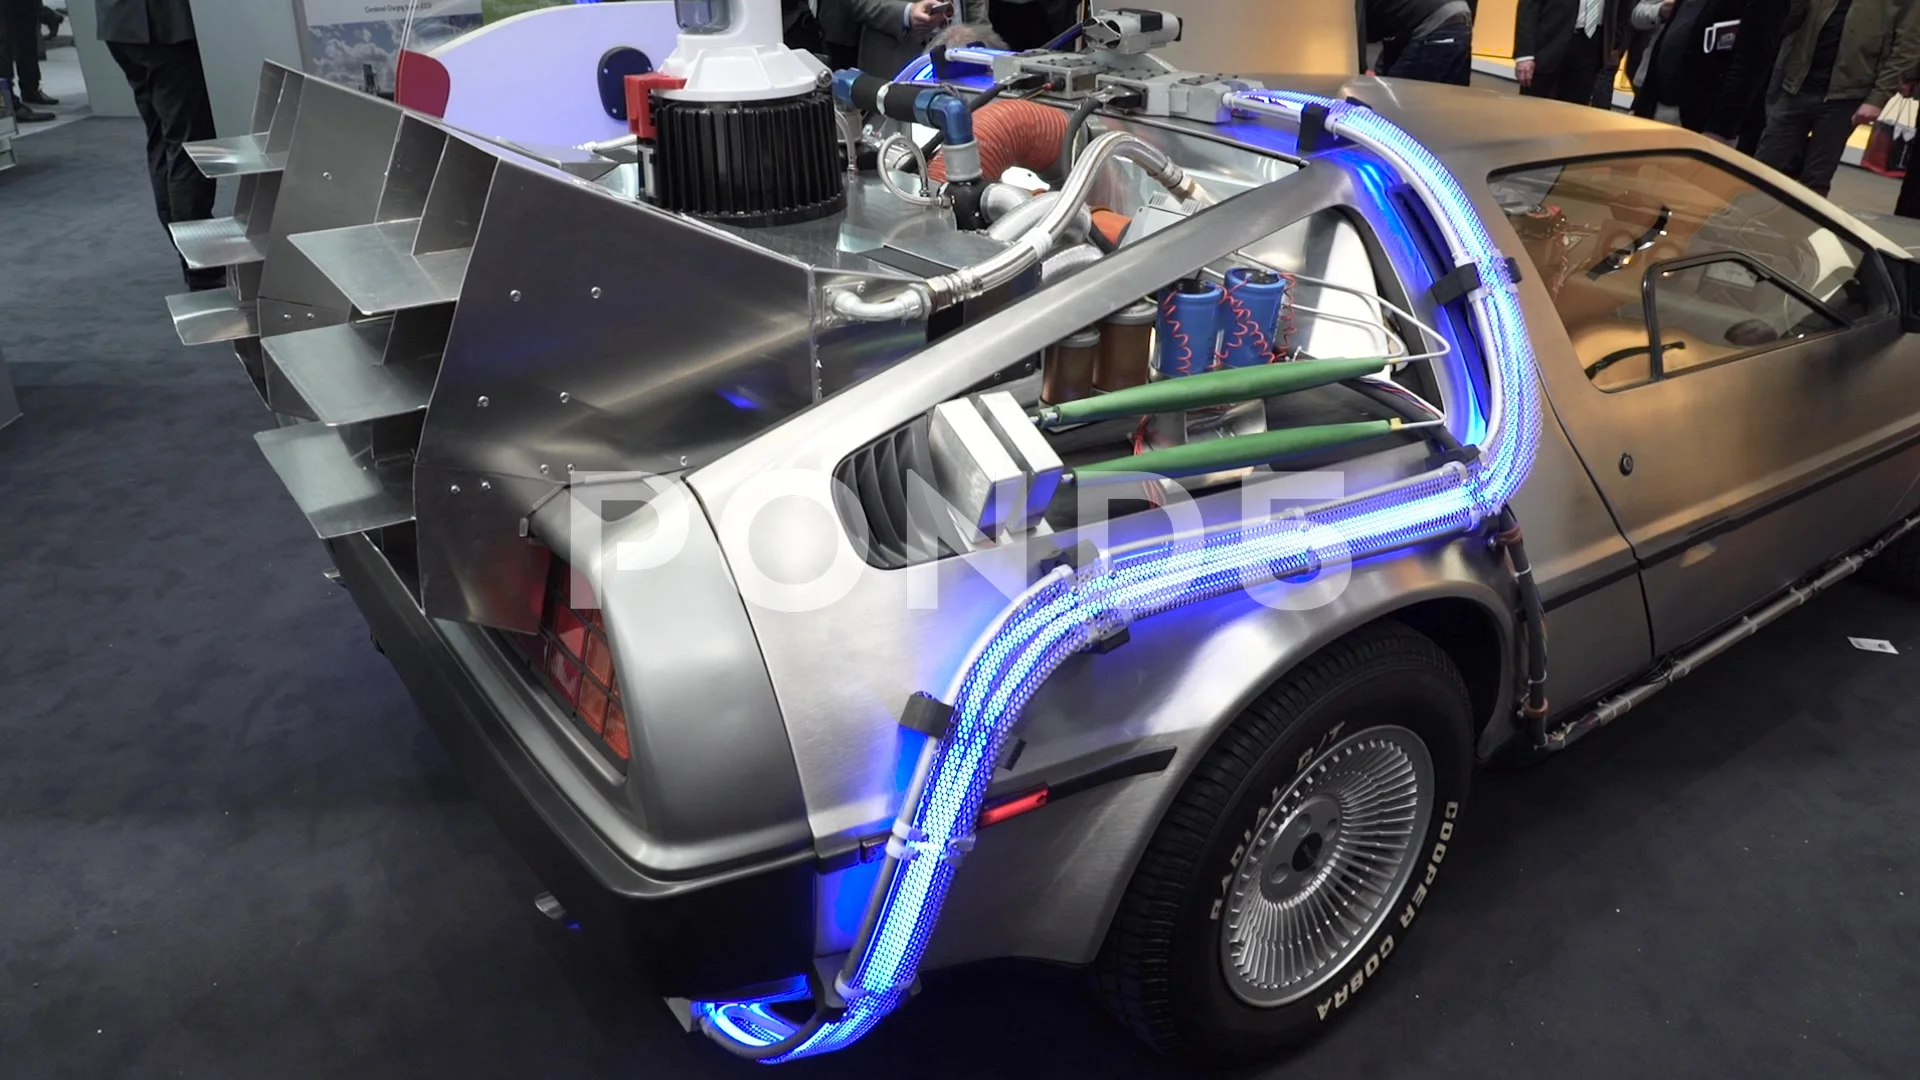 Back To The Future DeLorean time machine replica up for sale